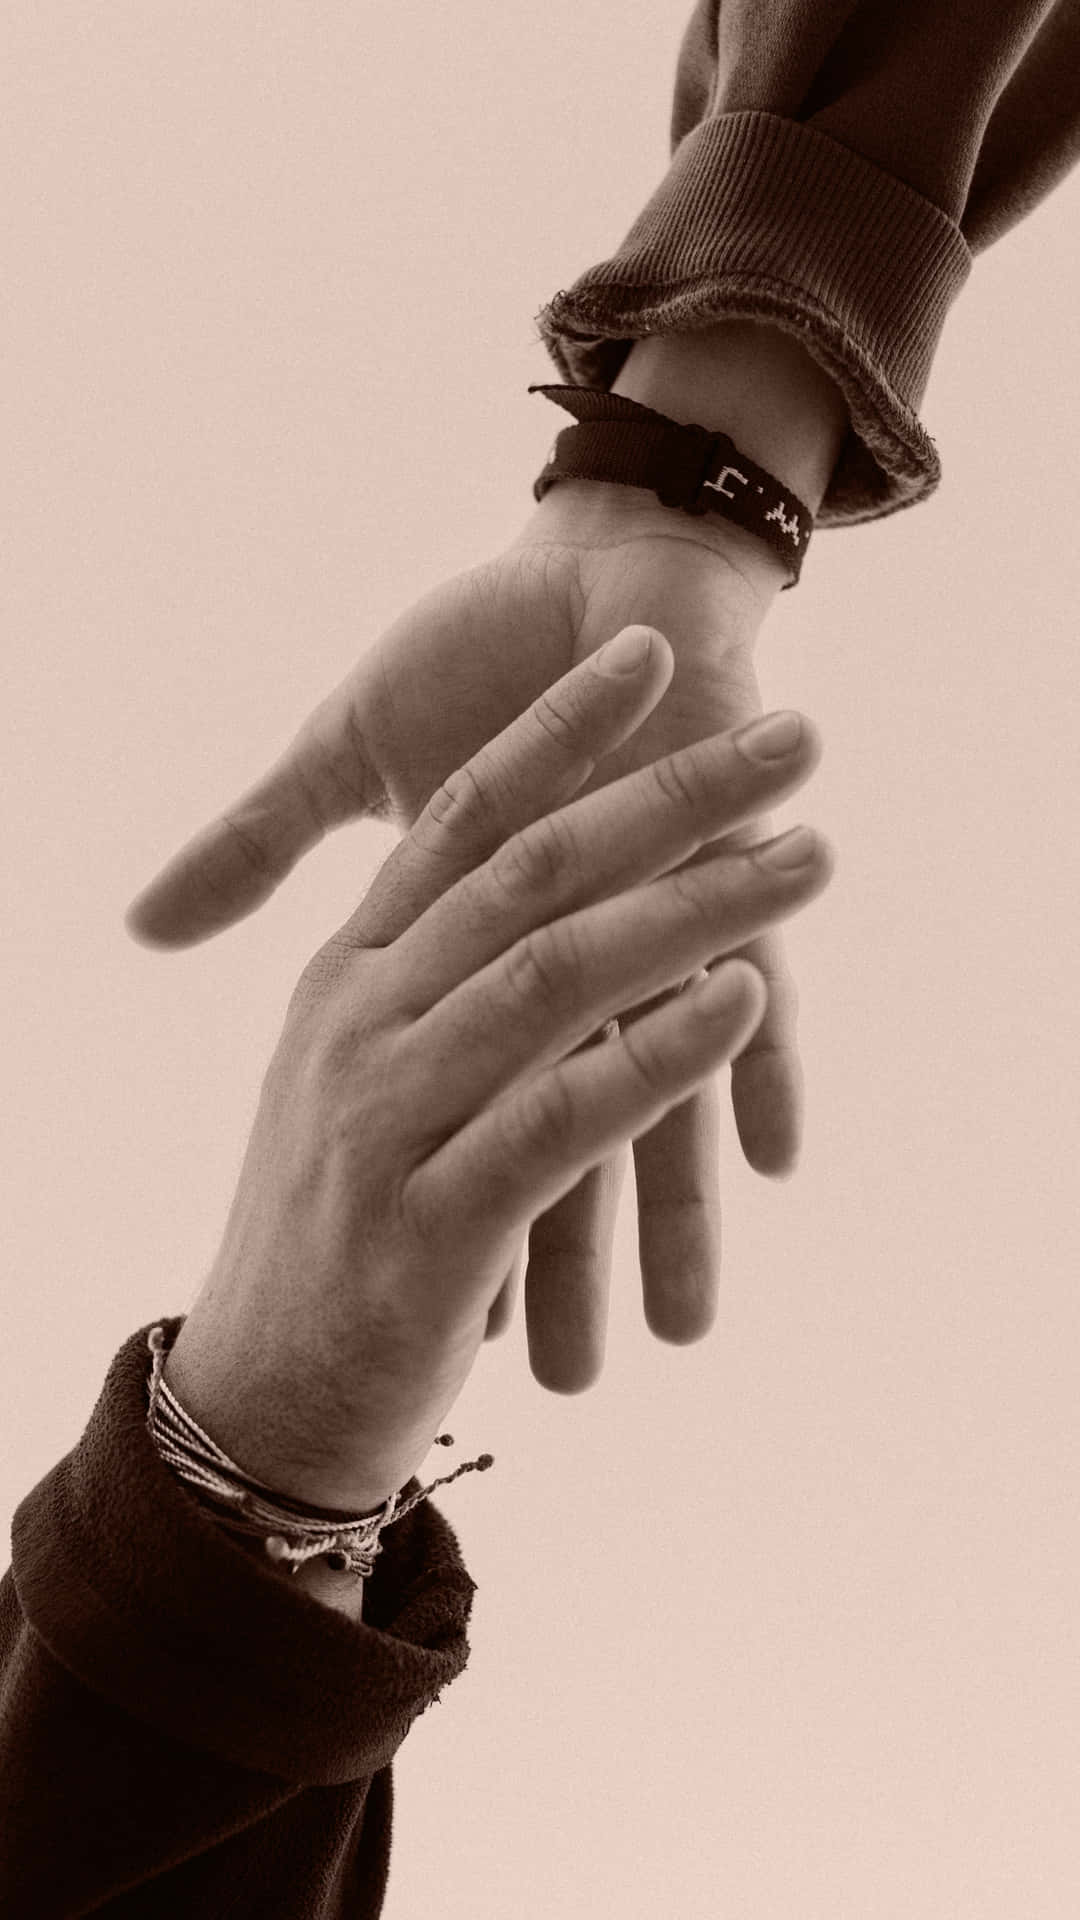 Gentle Handshake With Bracelets